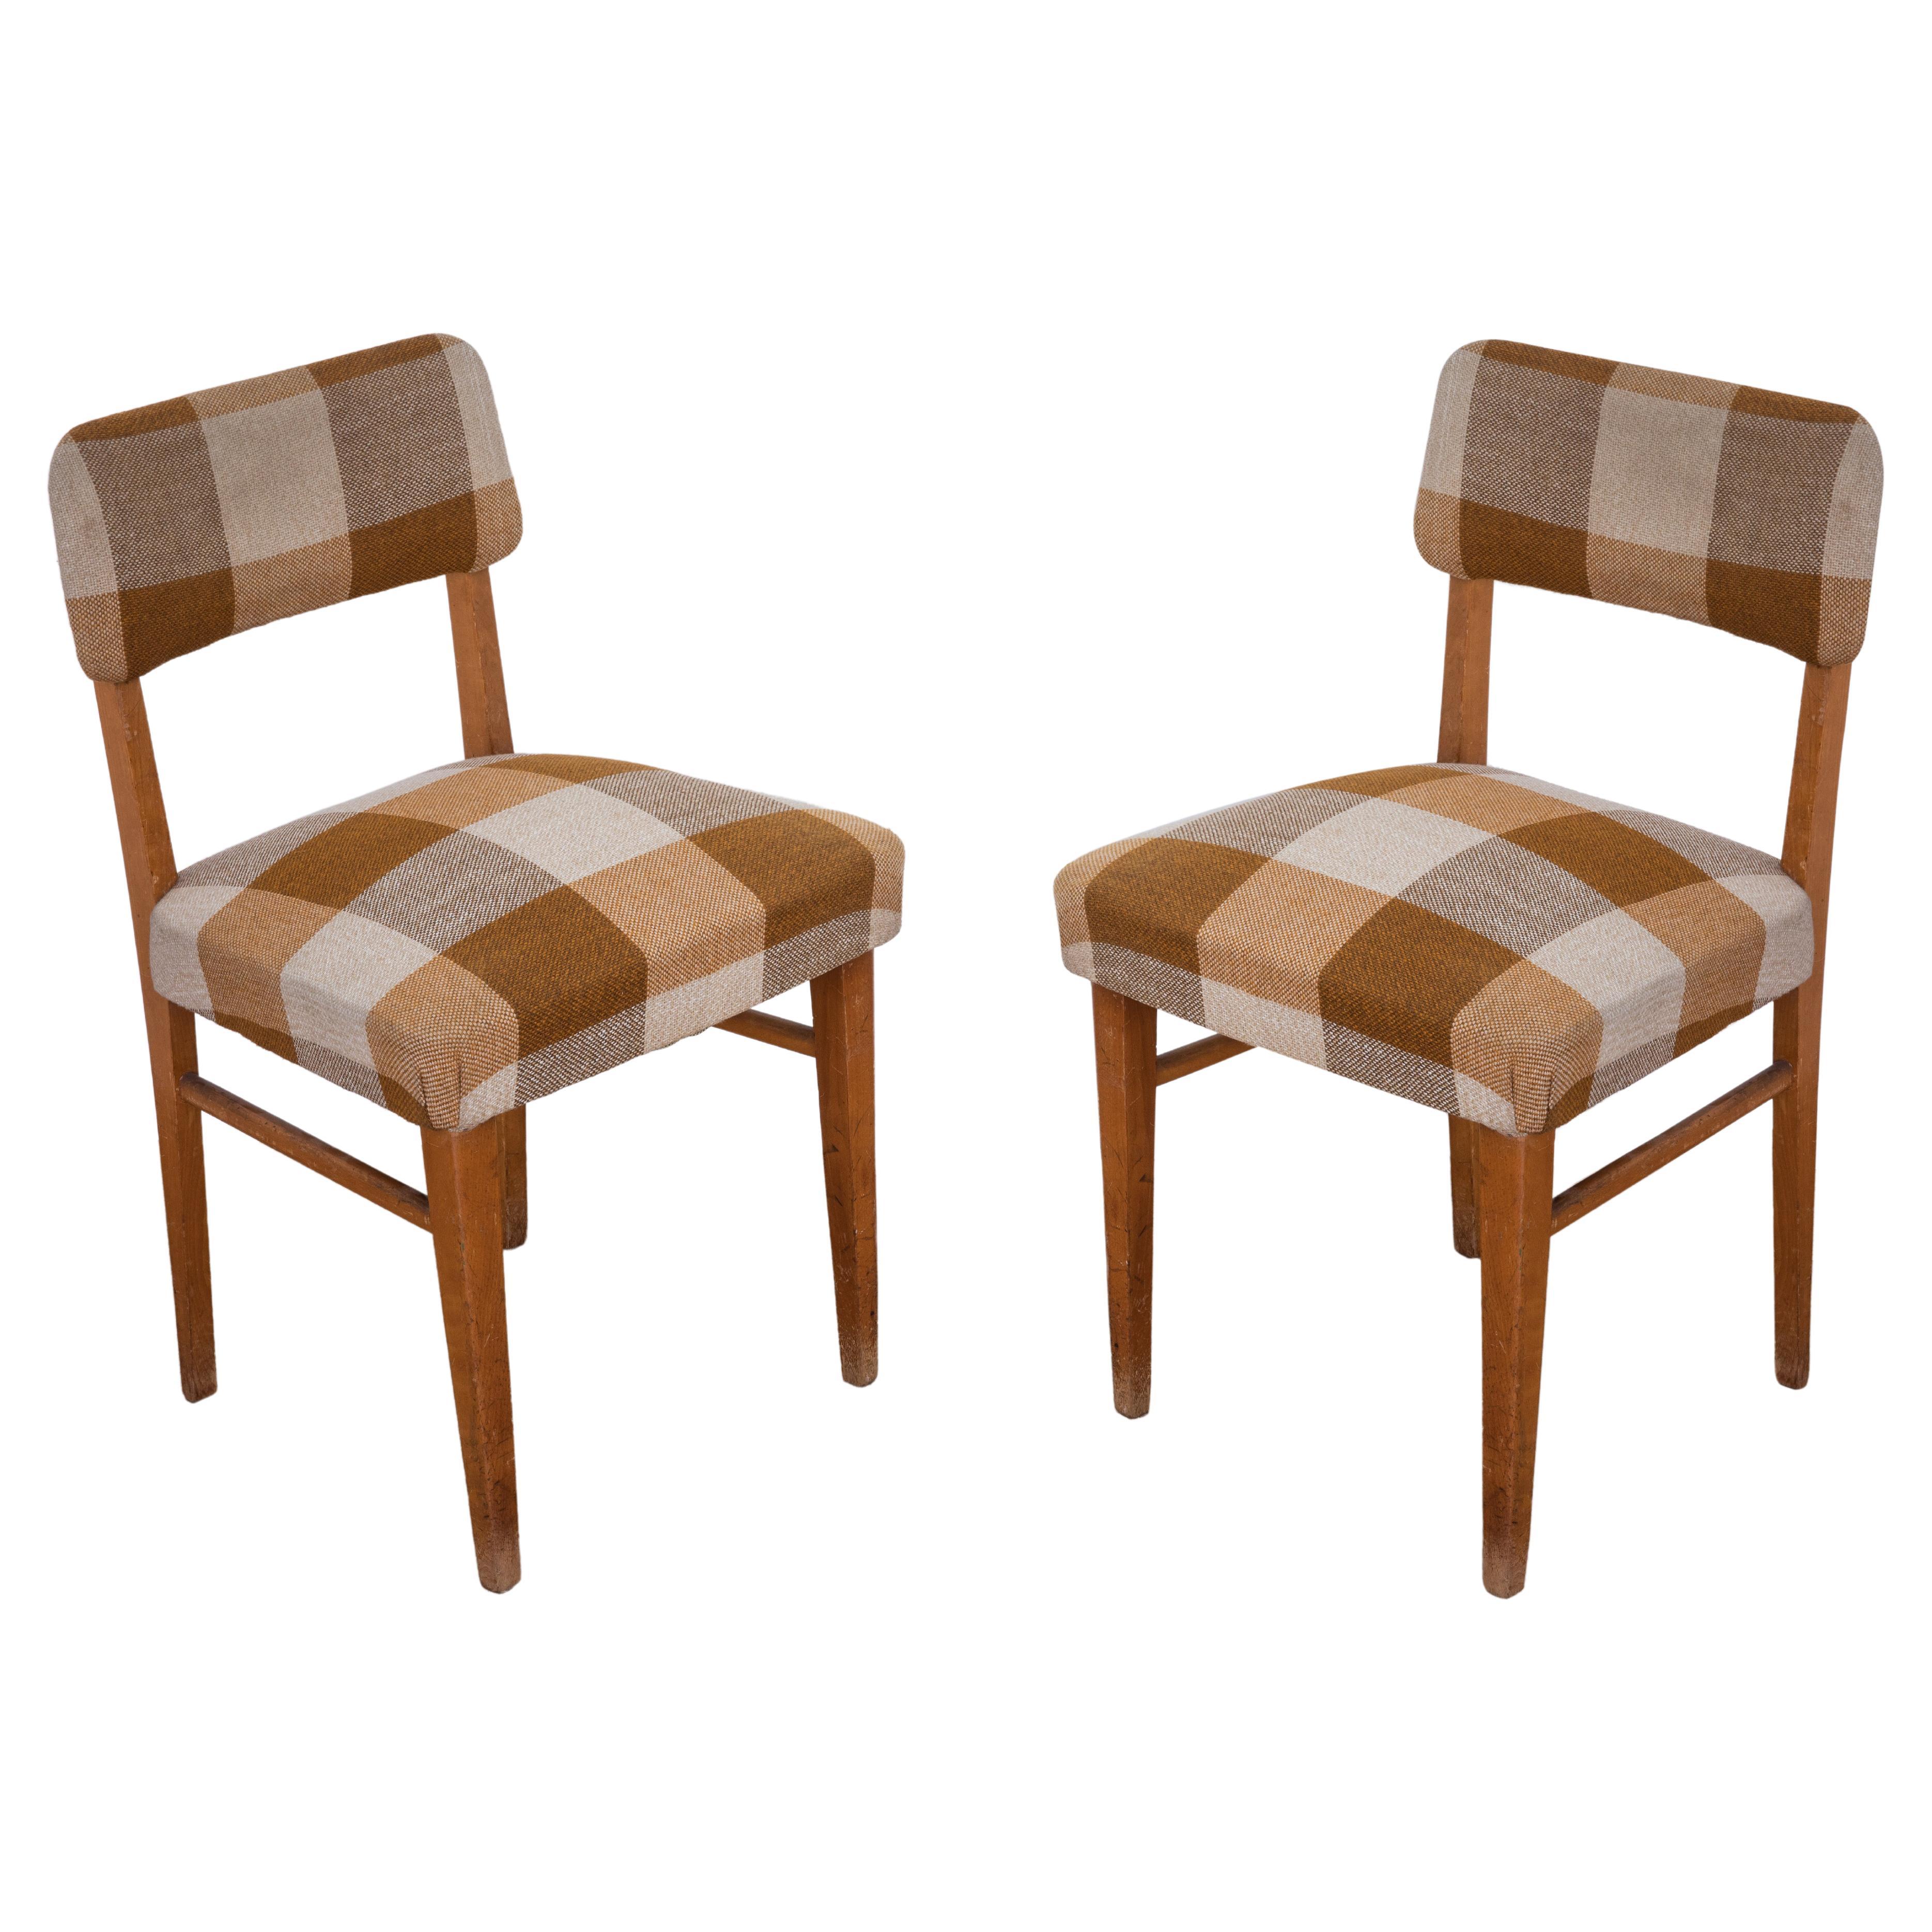 Paire de chaises originales des années 1950 avec structure en bois et assise recouvertes de tissu